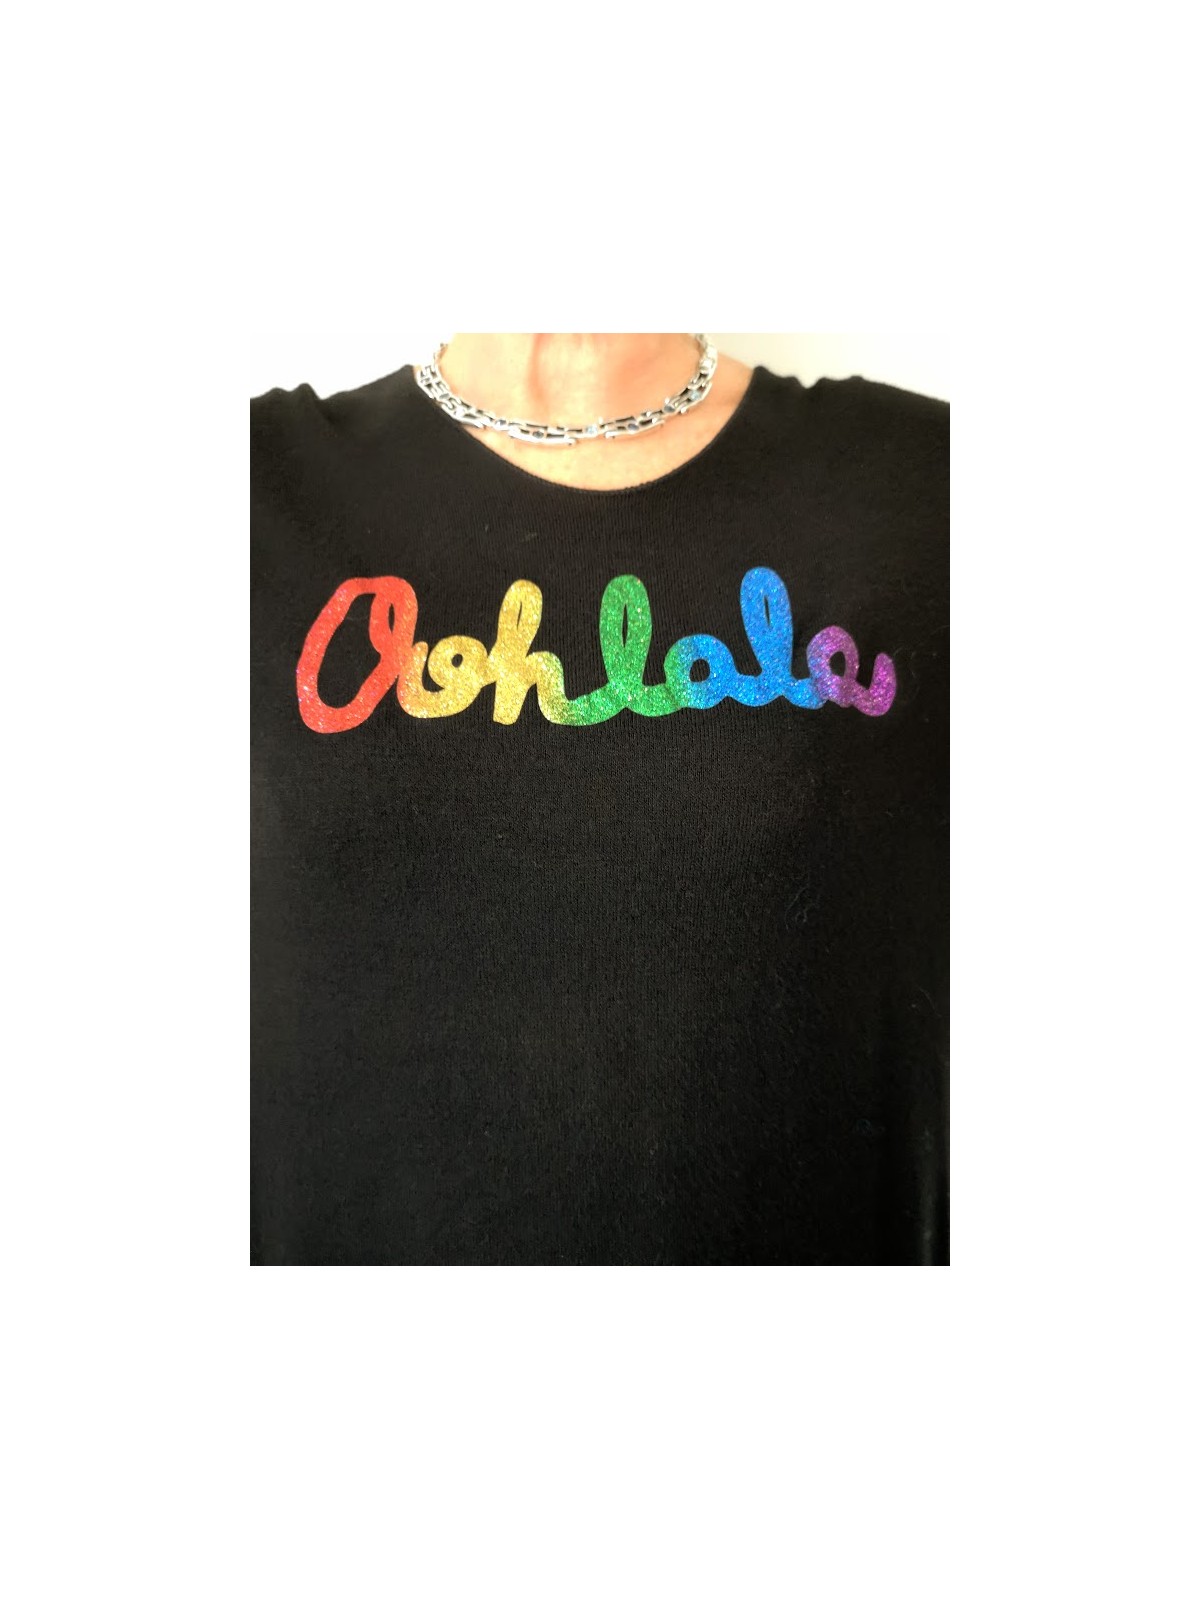 Pull col rond écritures ohlala colorées l 3 vue rapprochée l Tilleulmenthe mode boutique de vêtements femme en ligne